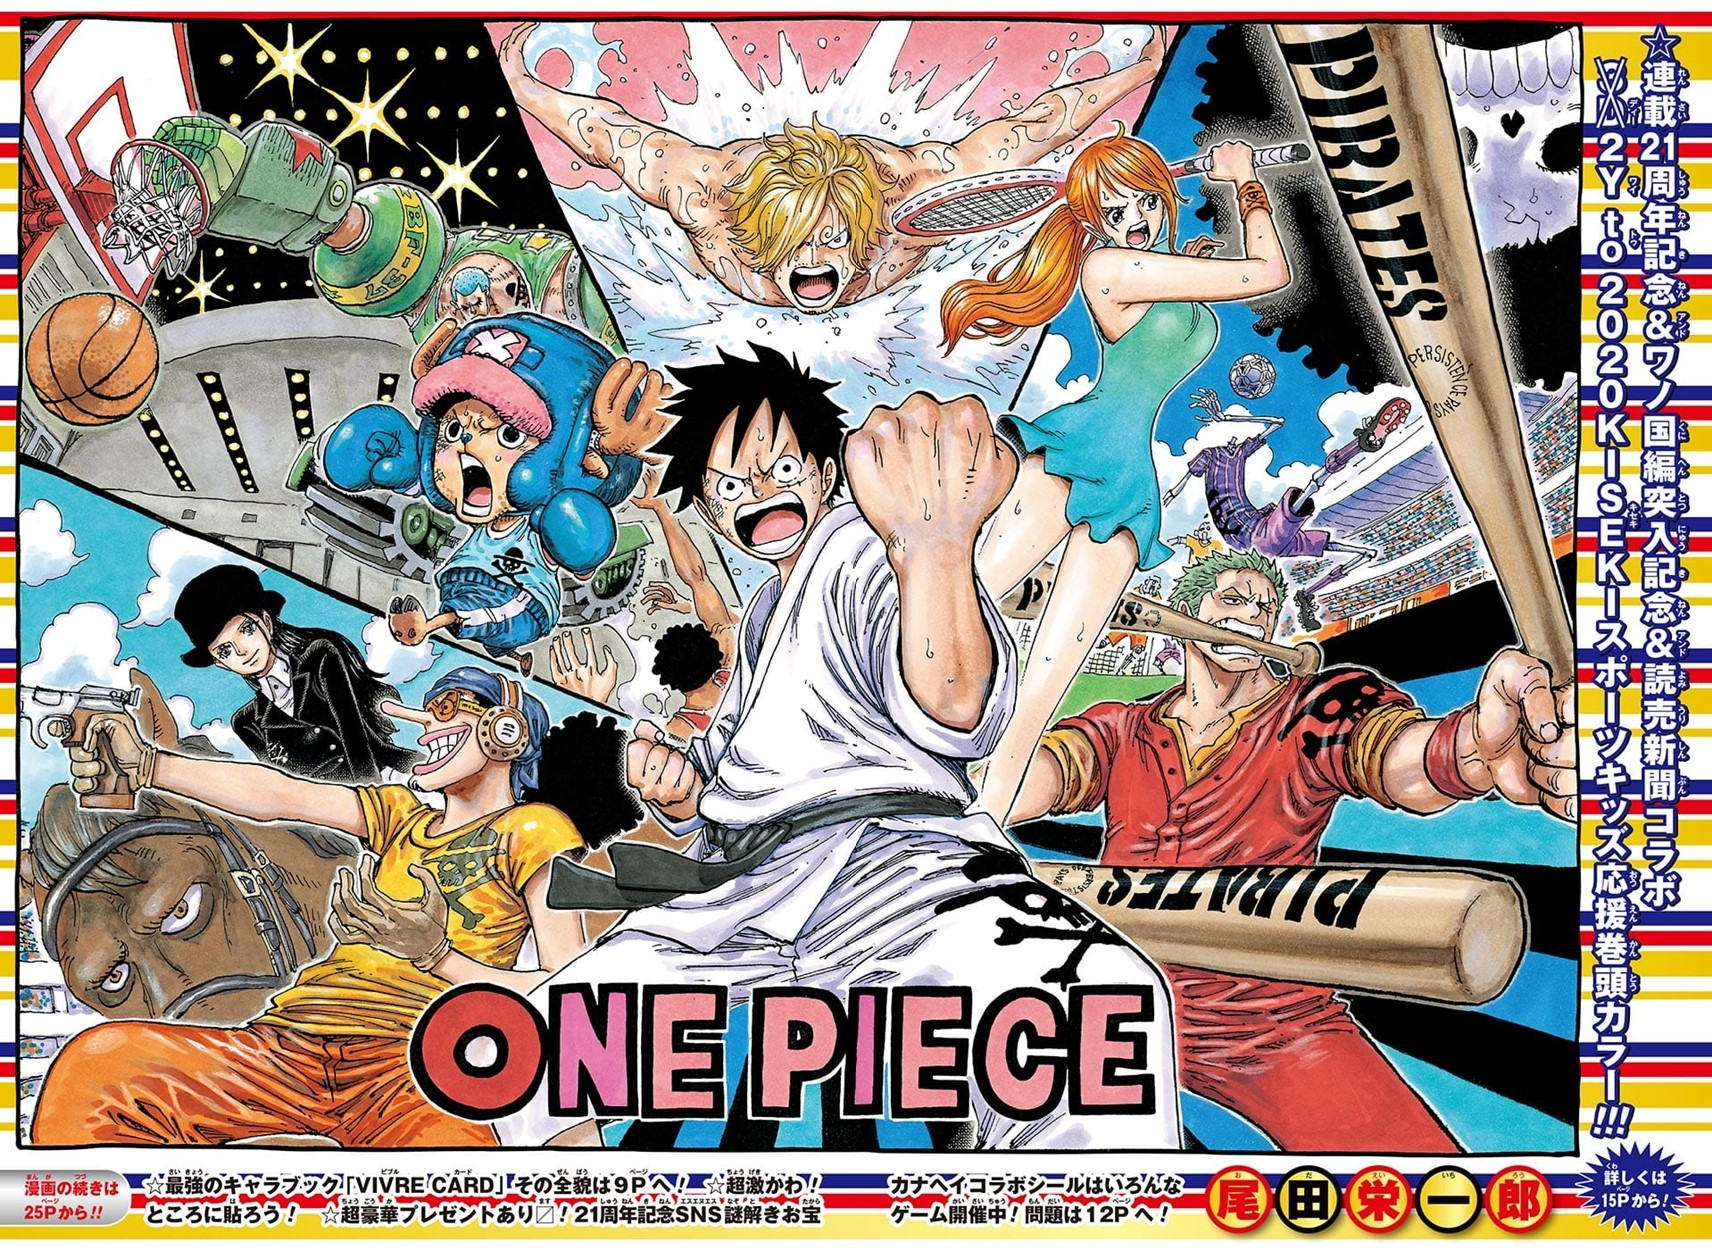 Capitulo 912 One Piece Wiki Fandom